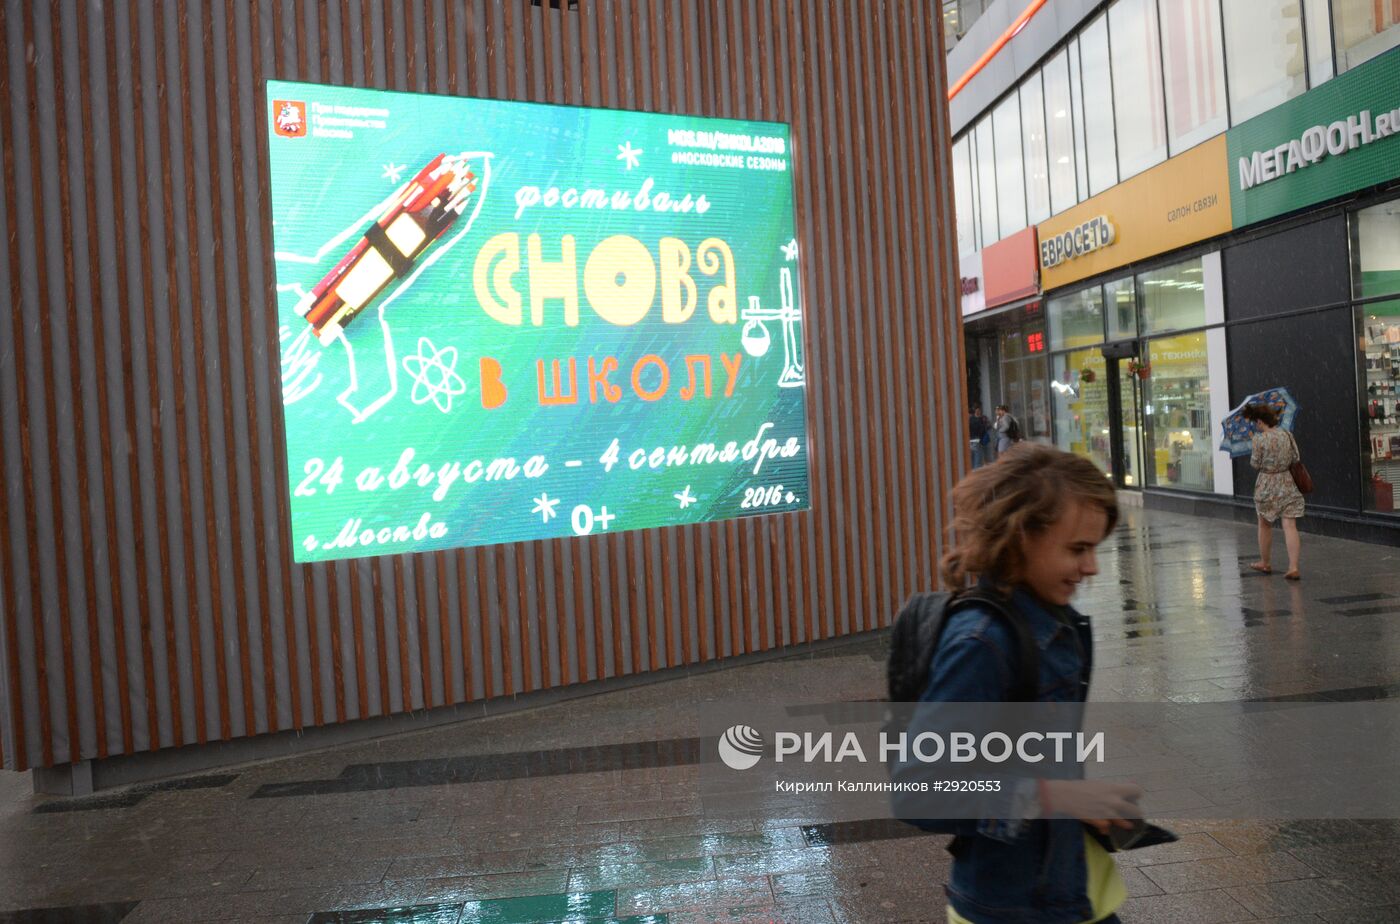 Открытие фестиваля "Снова в школу" в Москве